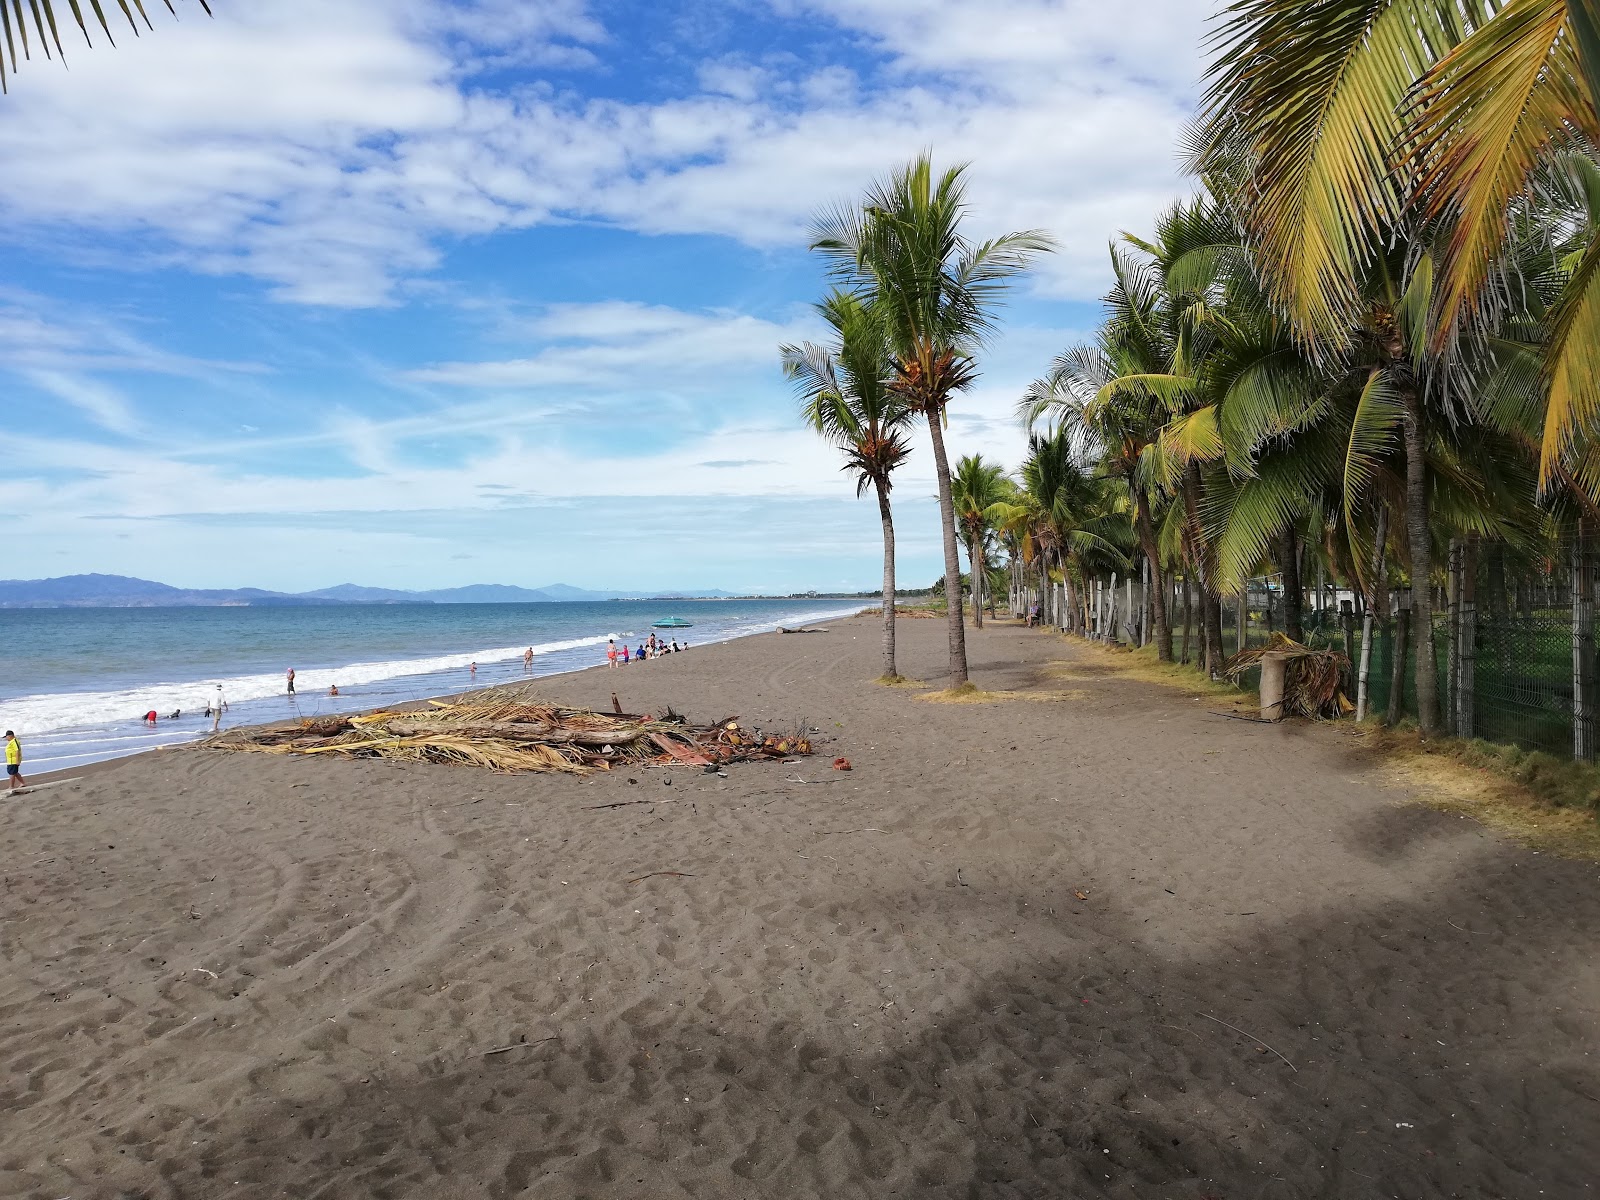 Playa El Roble'in fotoğrafı kahverengi kum yüzey ile